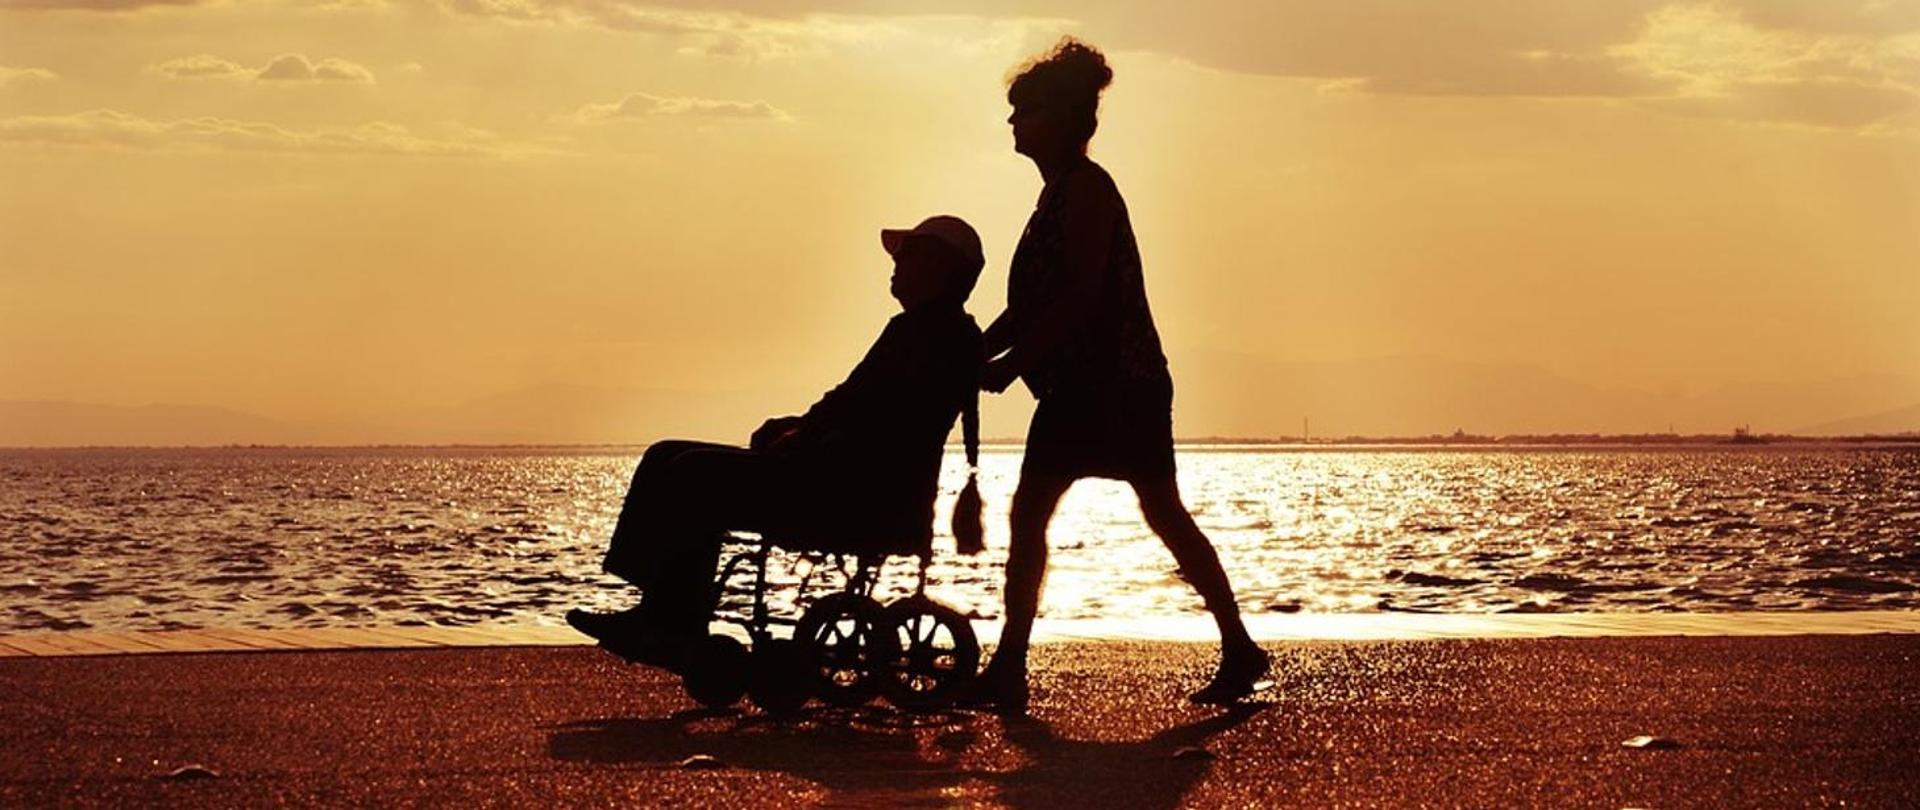 kobieta prowadzi wózek po piasku na którym jest osoba niepełnosprawna w tle morze. Podczas zachodu słońca